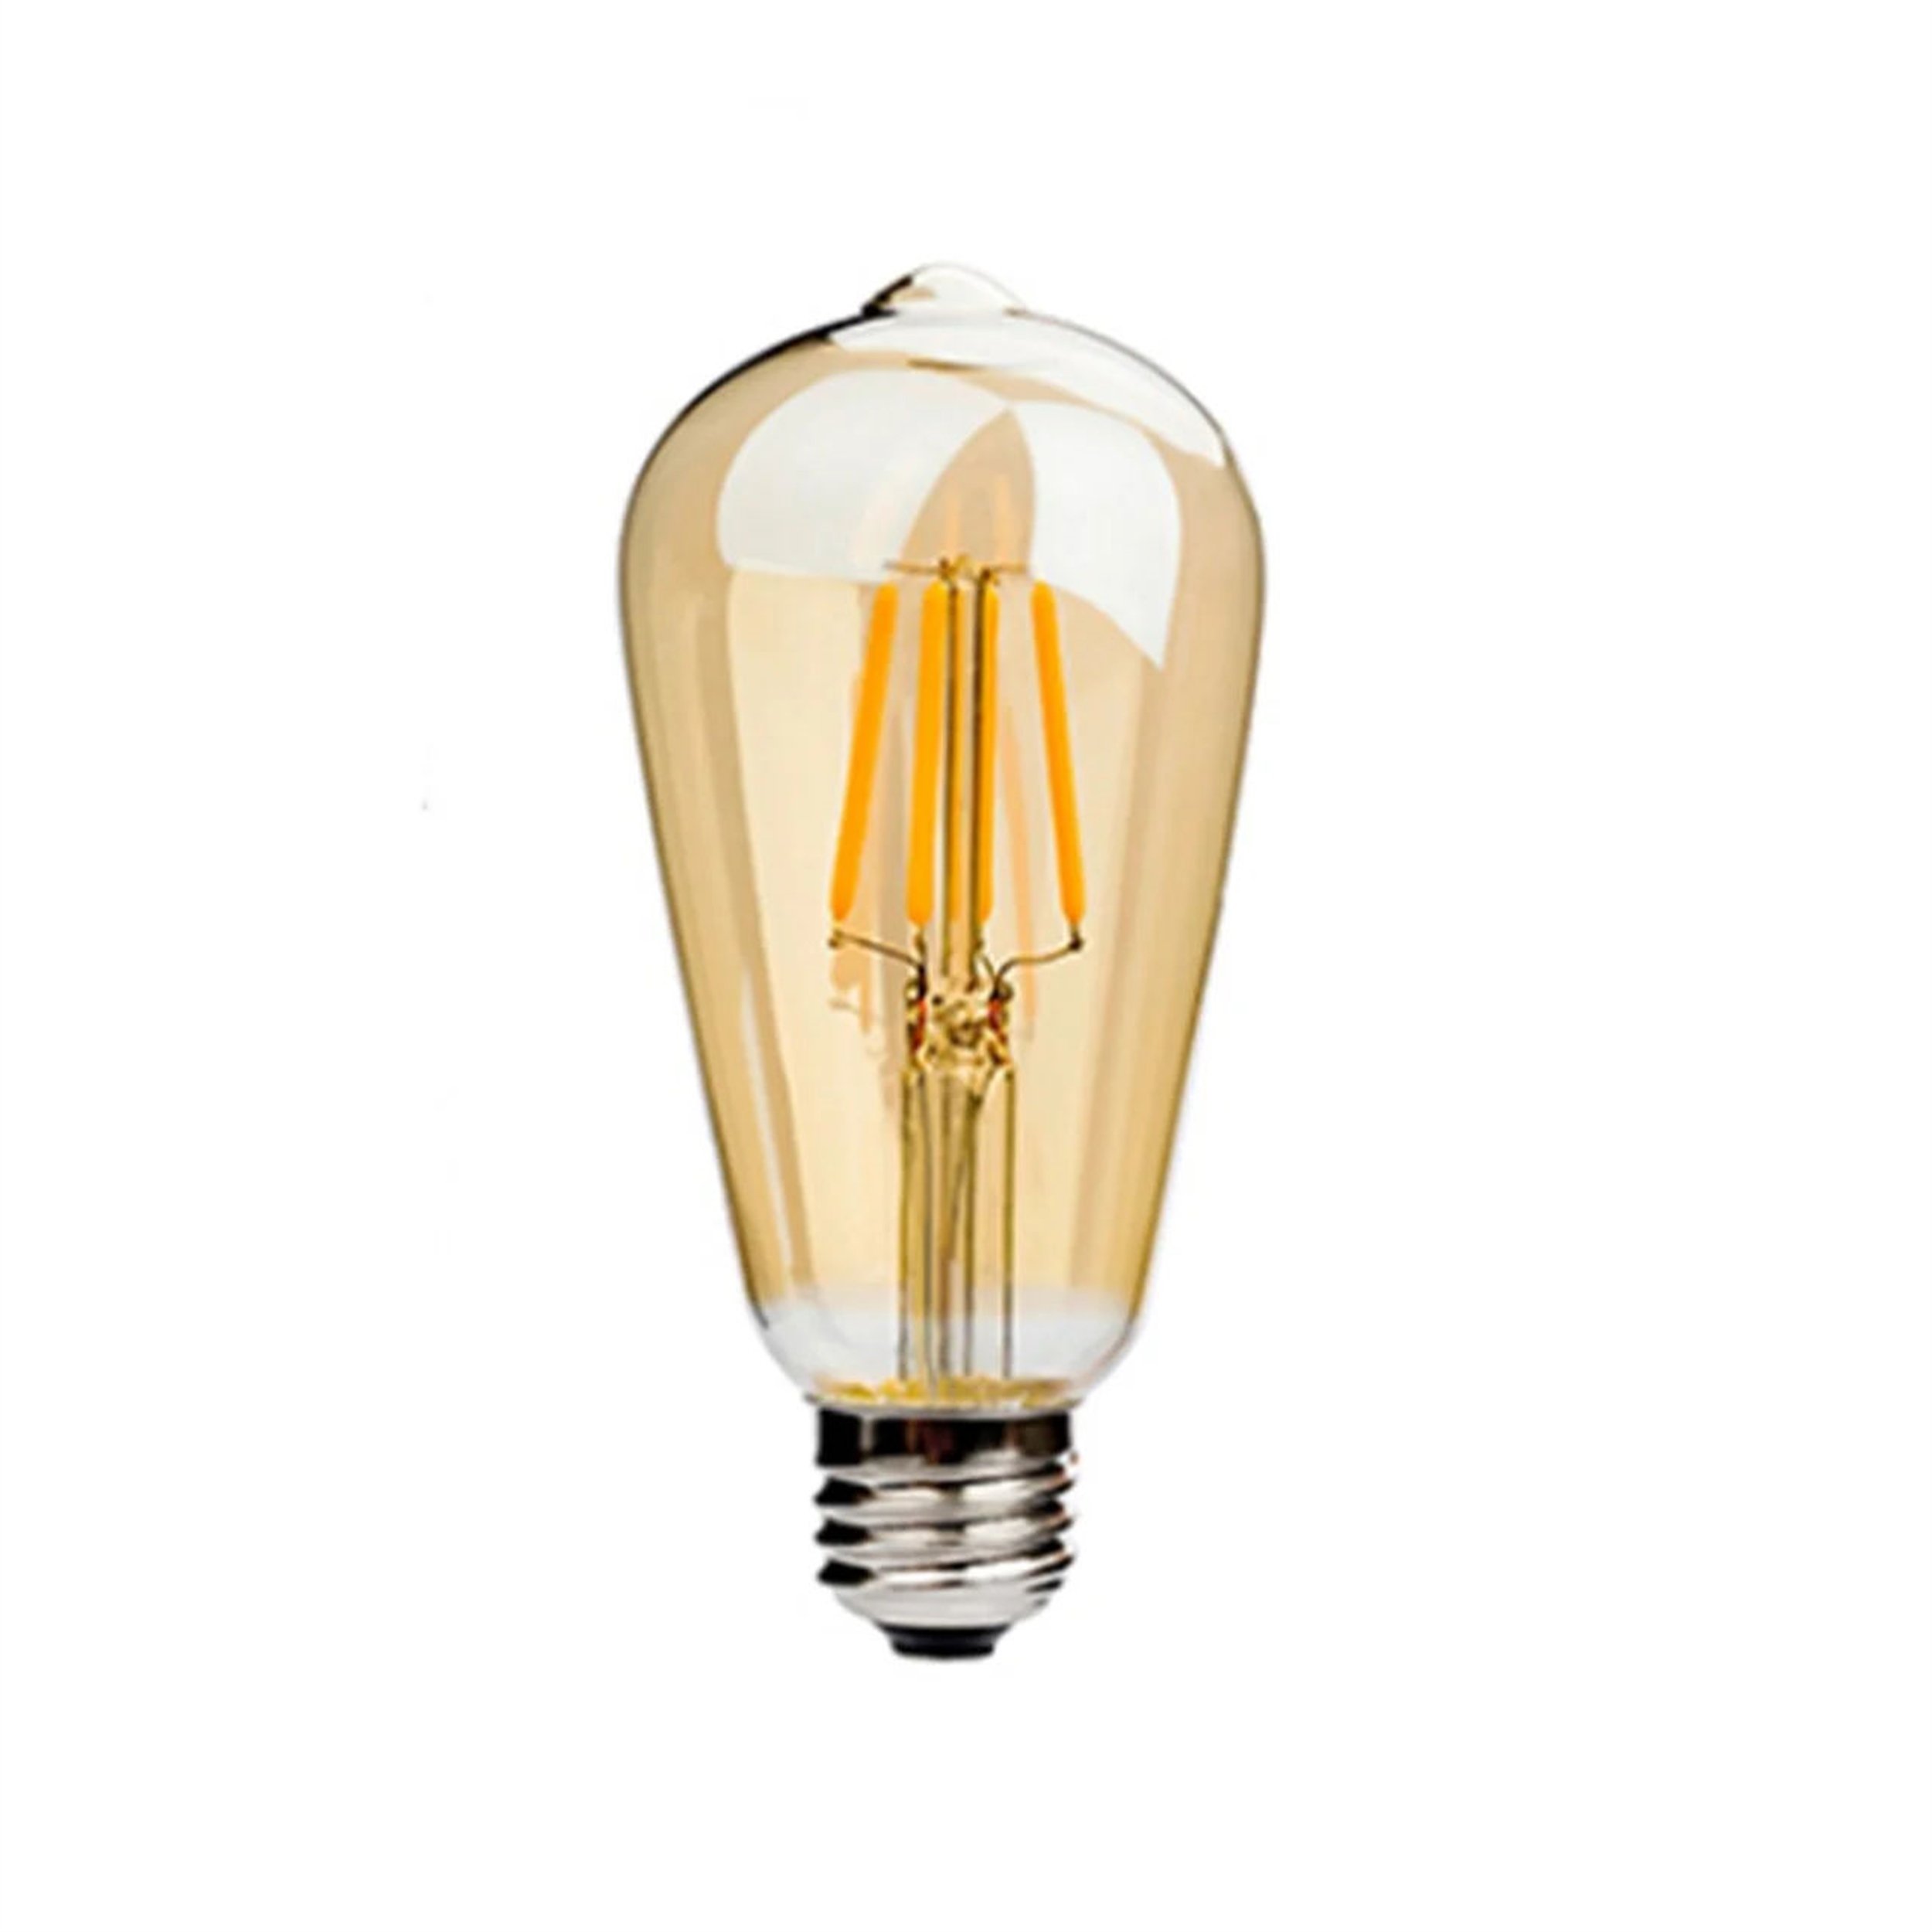 CATA Amber 8 Watt Ruskik LED Ampul (CT-4290) | Afeks Yapı Market